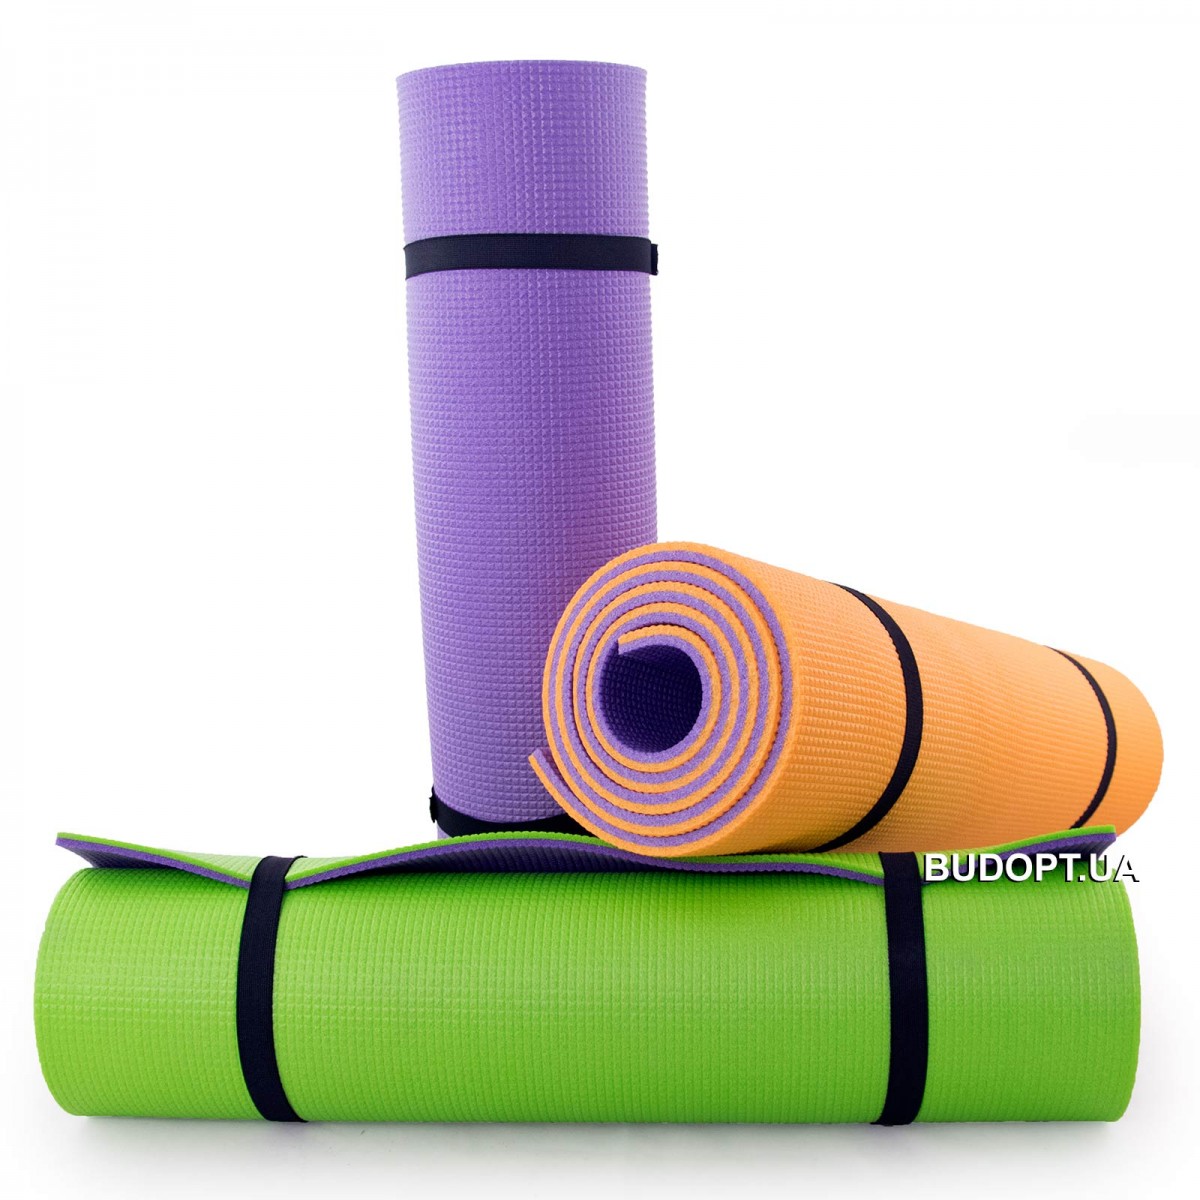 Коврик для йоги, фитнеса и спорта (каремат спортивный) OSPORT Спорт .